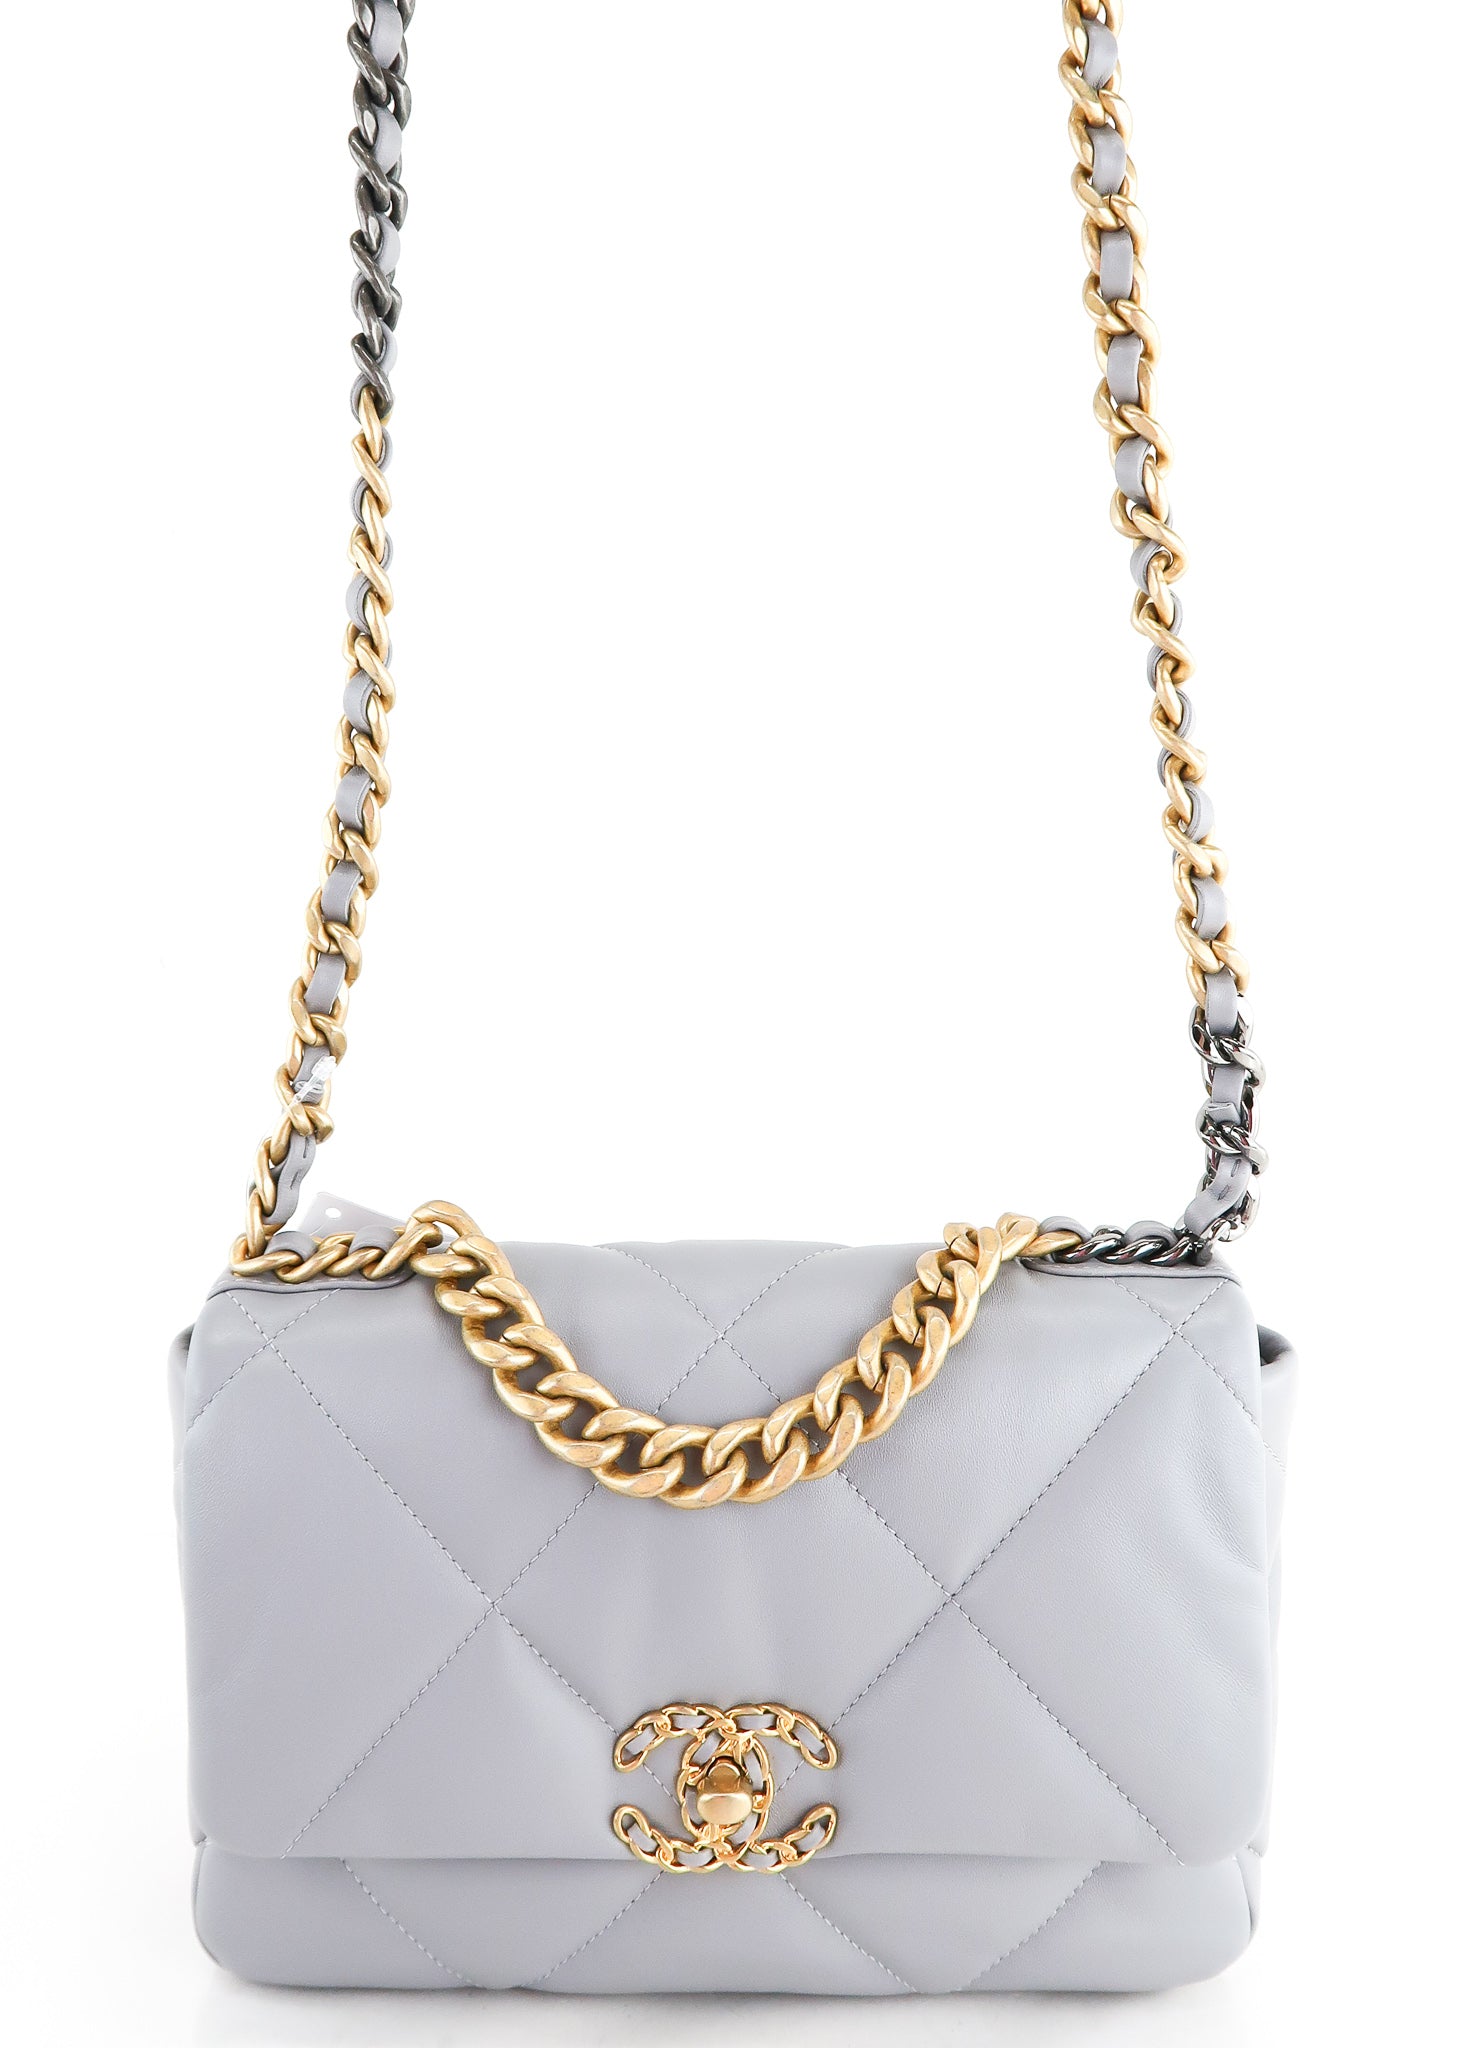 Chanel Beige Quilted Lambskin Medium Chanel 19 Flap Bag, myGemma, AU